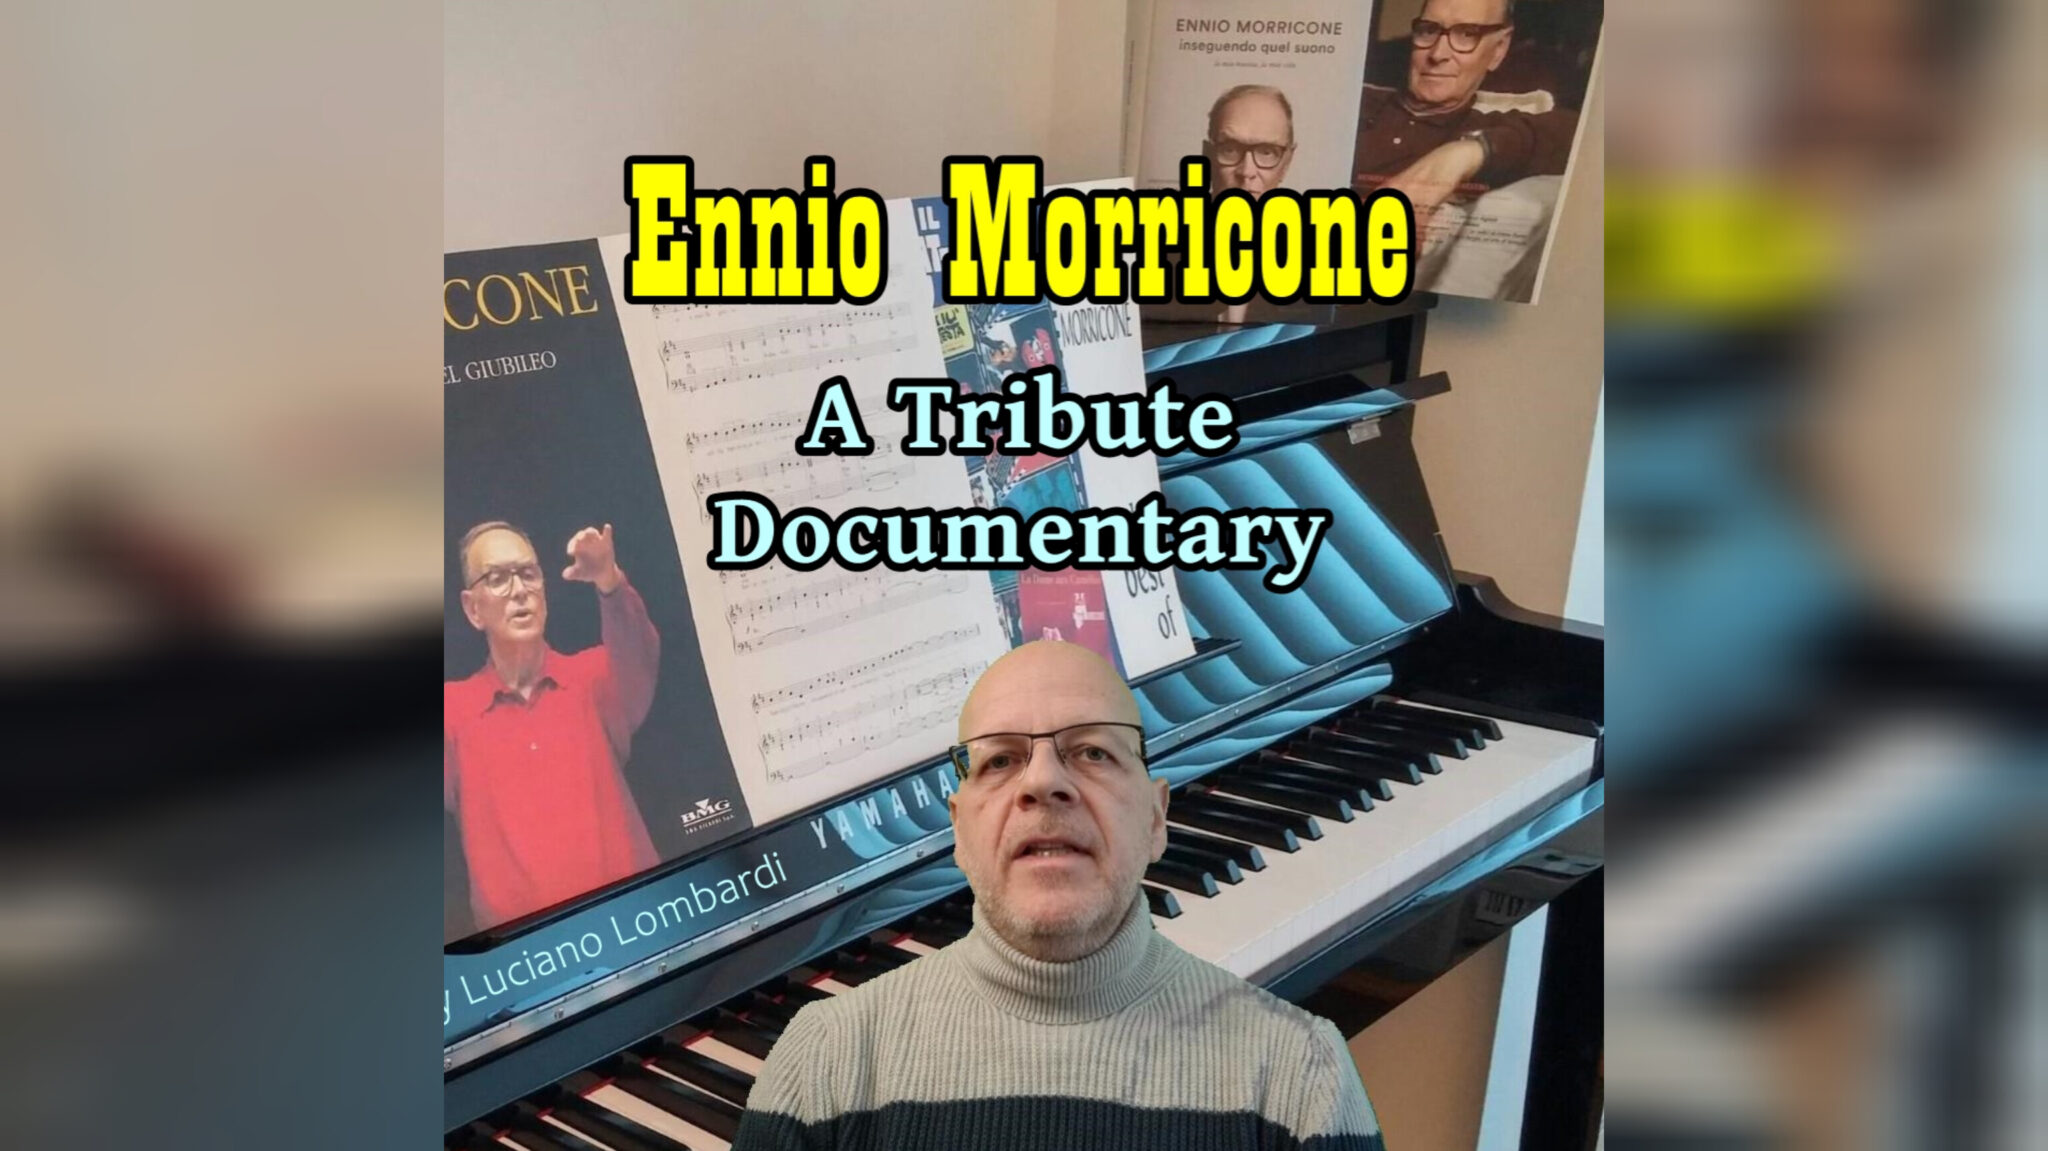 Ennio Morricone. A Tribute Documentary - Luciano Lombardi